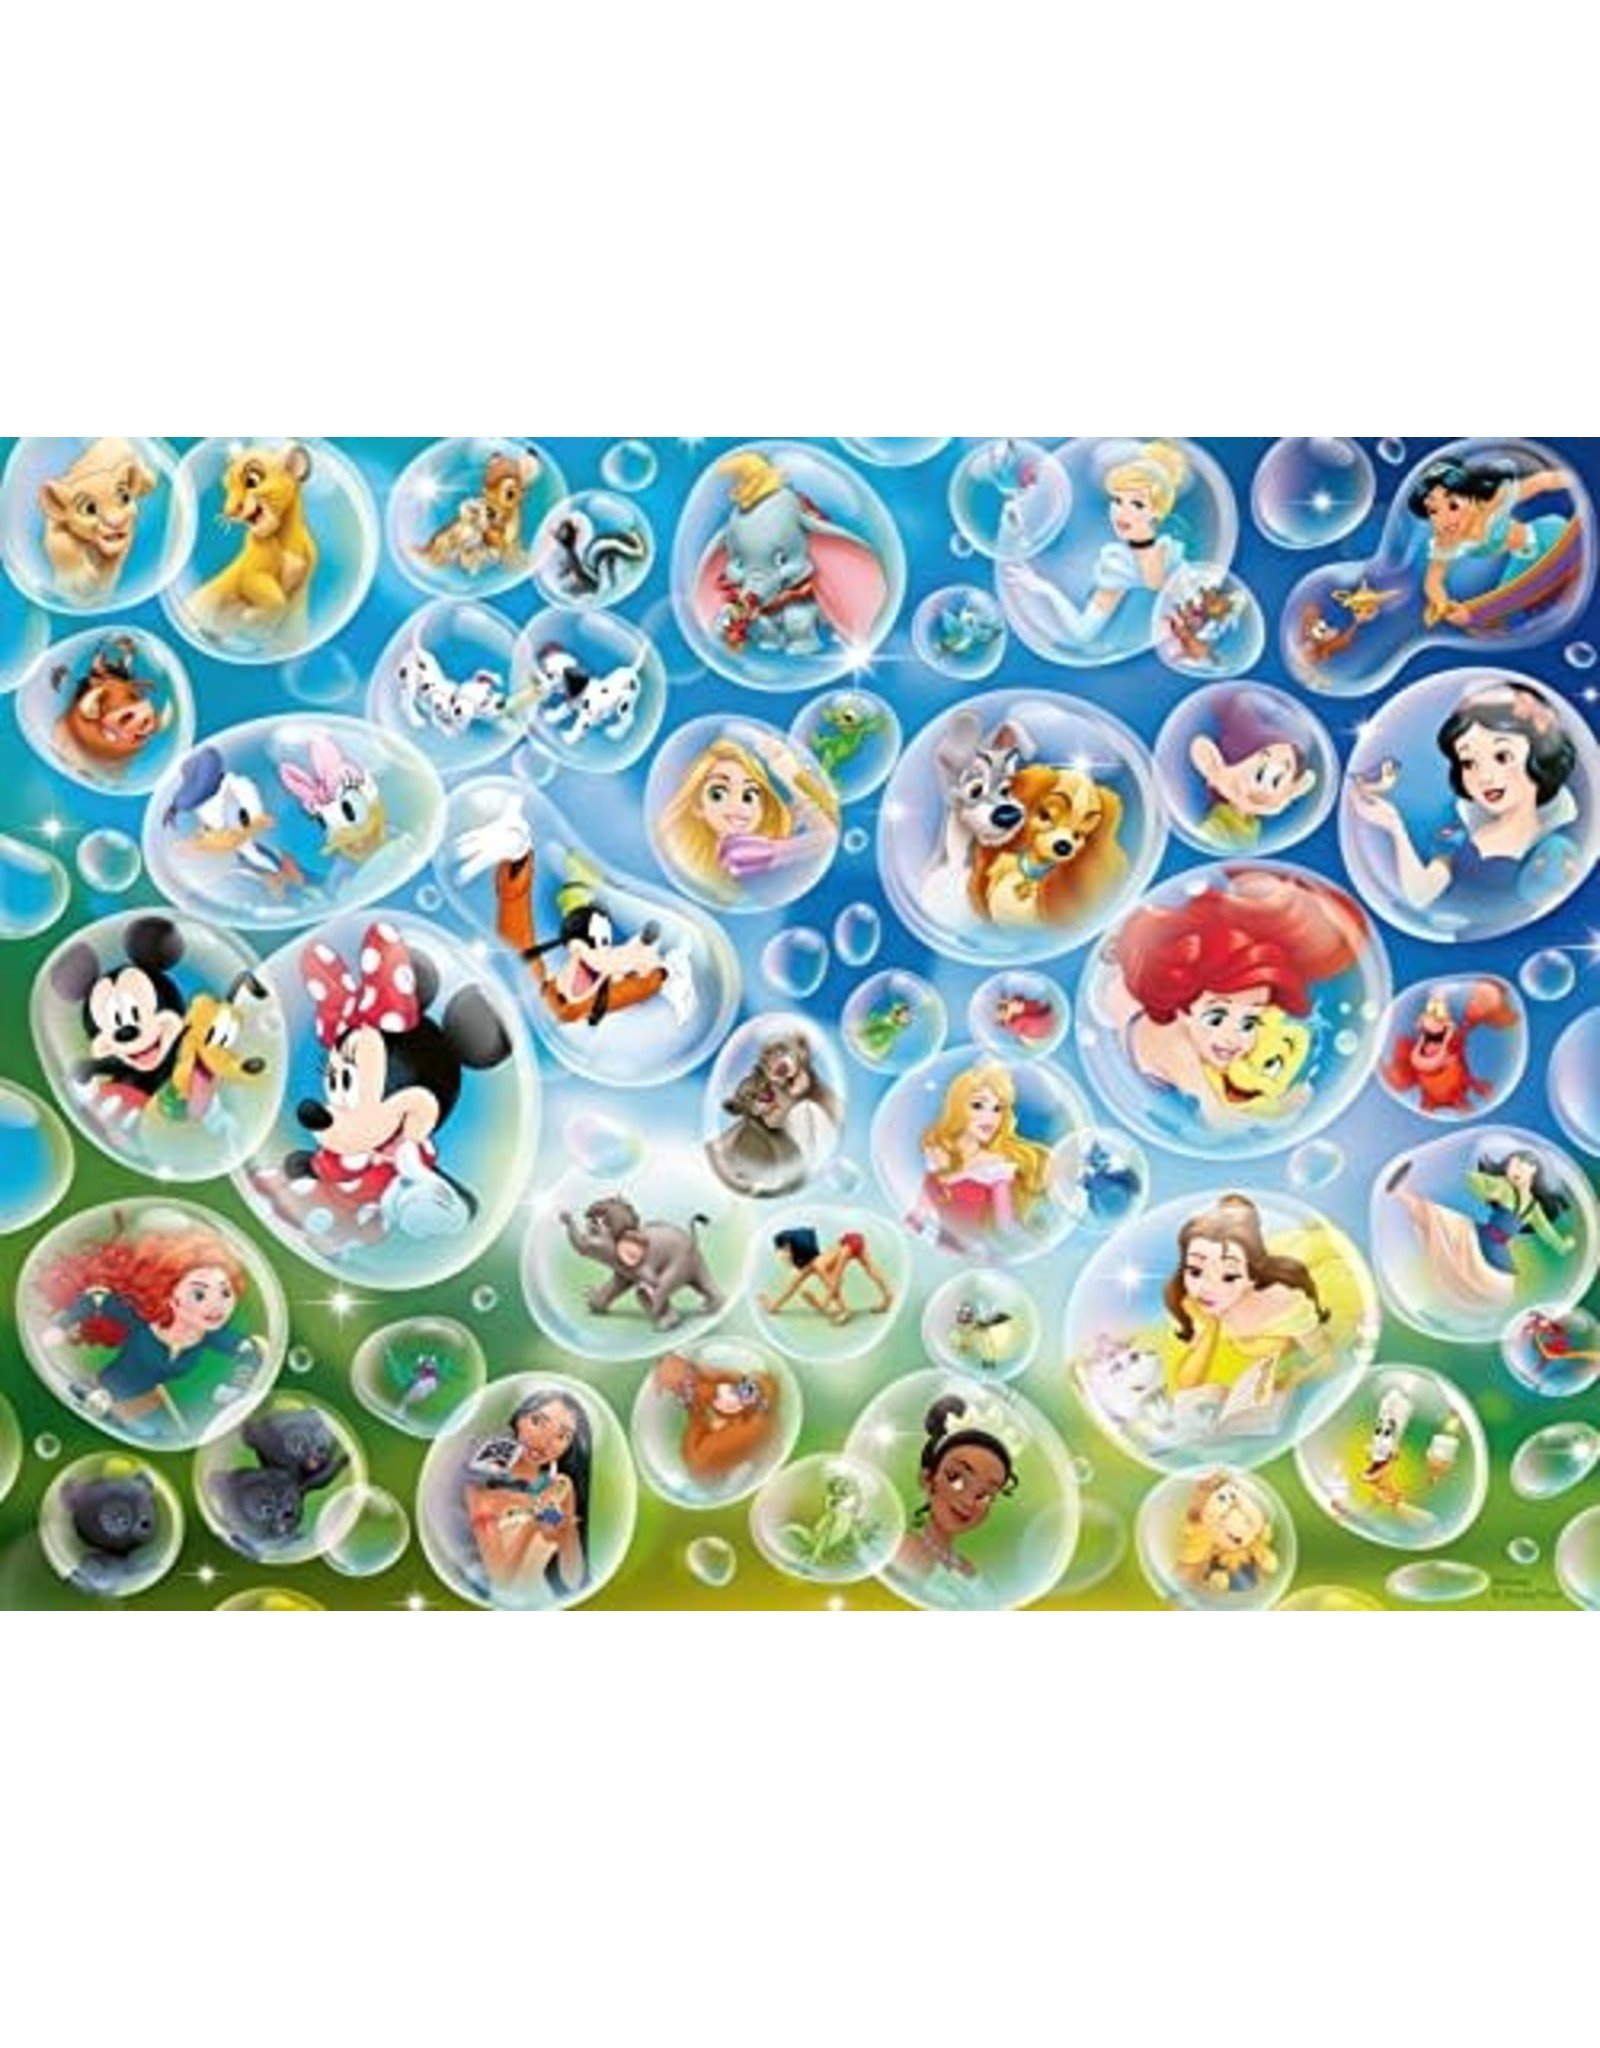 Ravensburger 150 pcs. Disney Bubbles Puzzle